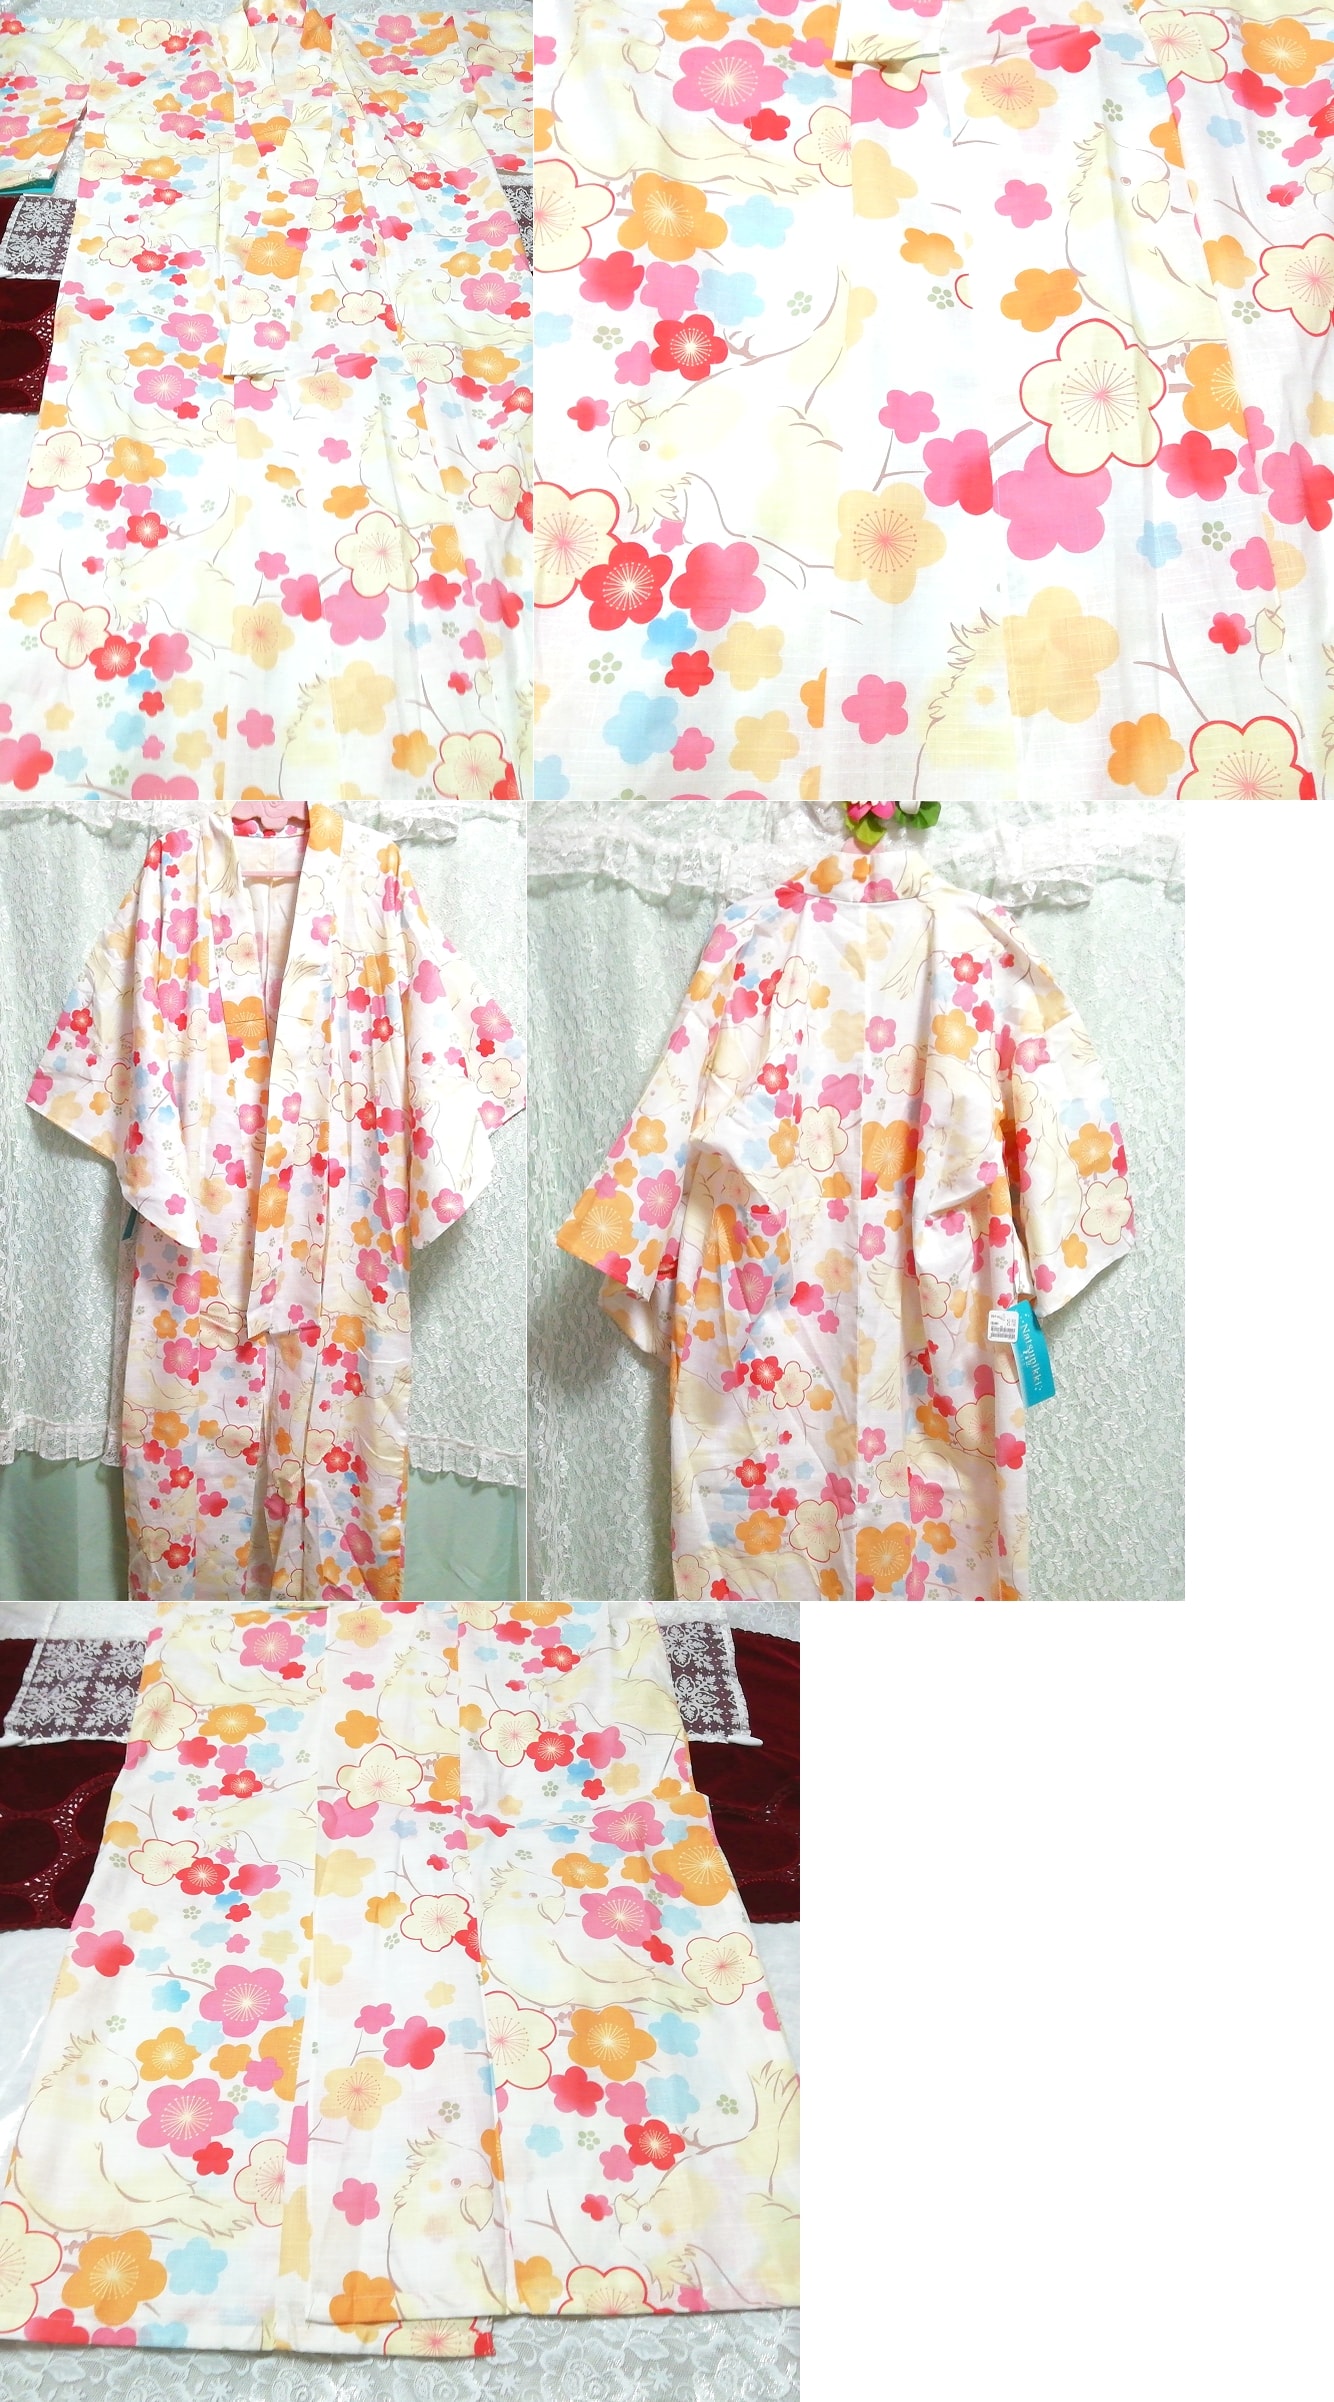 꽃무늬 새그림 유카타 유카타 일본옷, 유카타, 유카타(싱글), 다른 사람